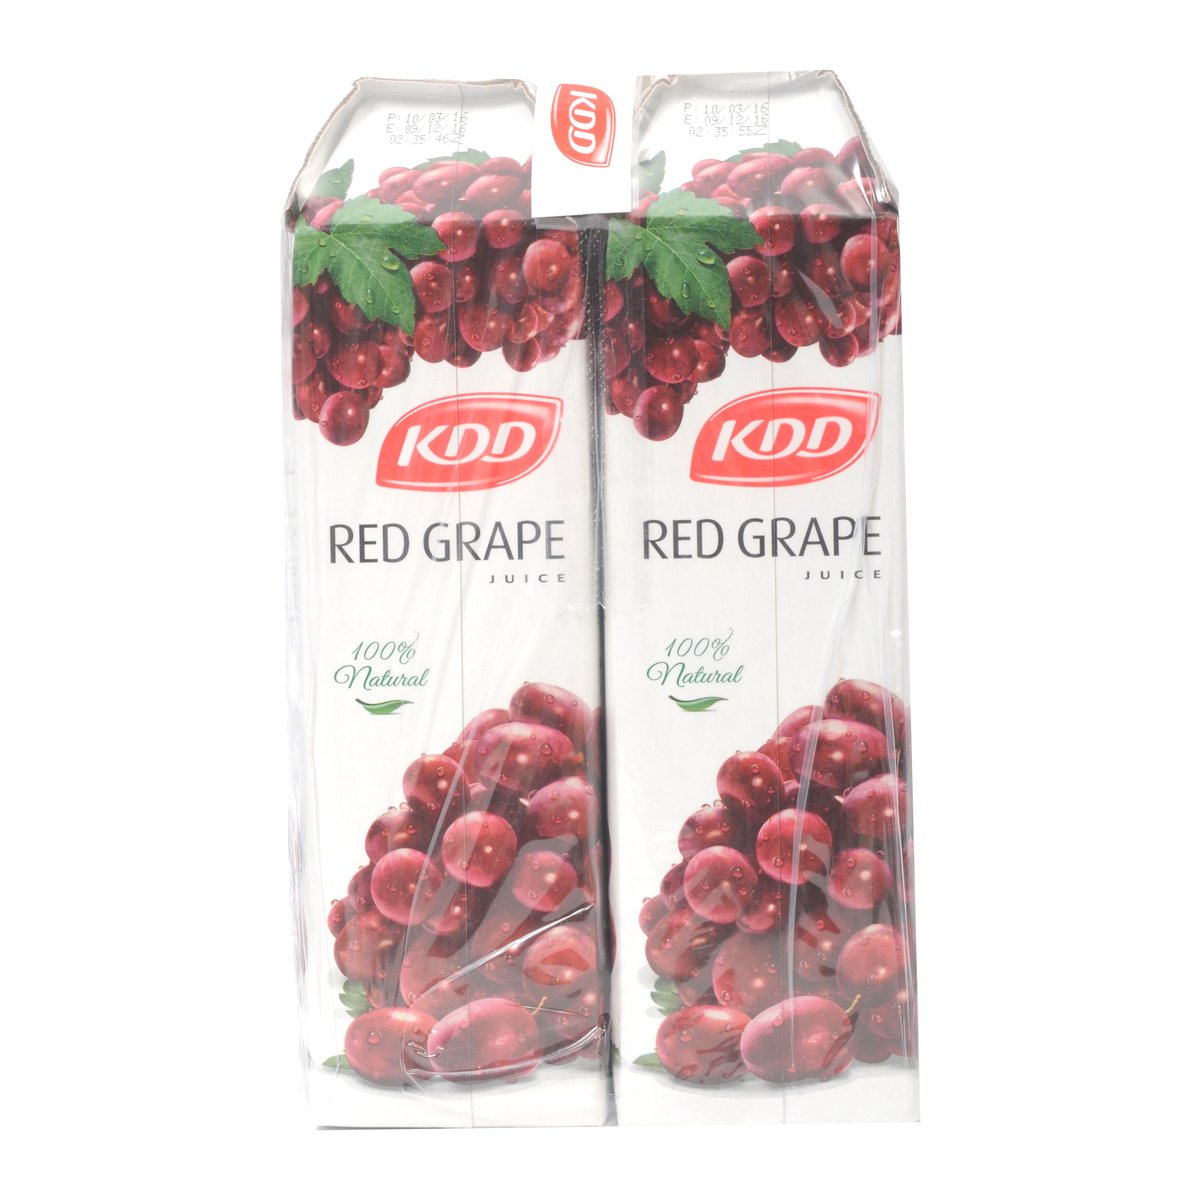 KDD Red Grape Juice 1Litre x 4 Pieces